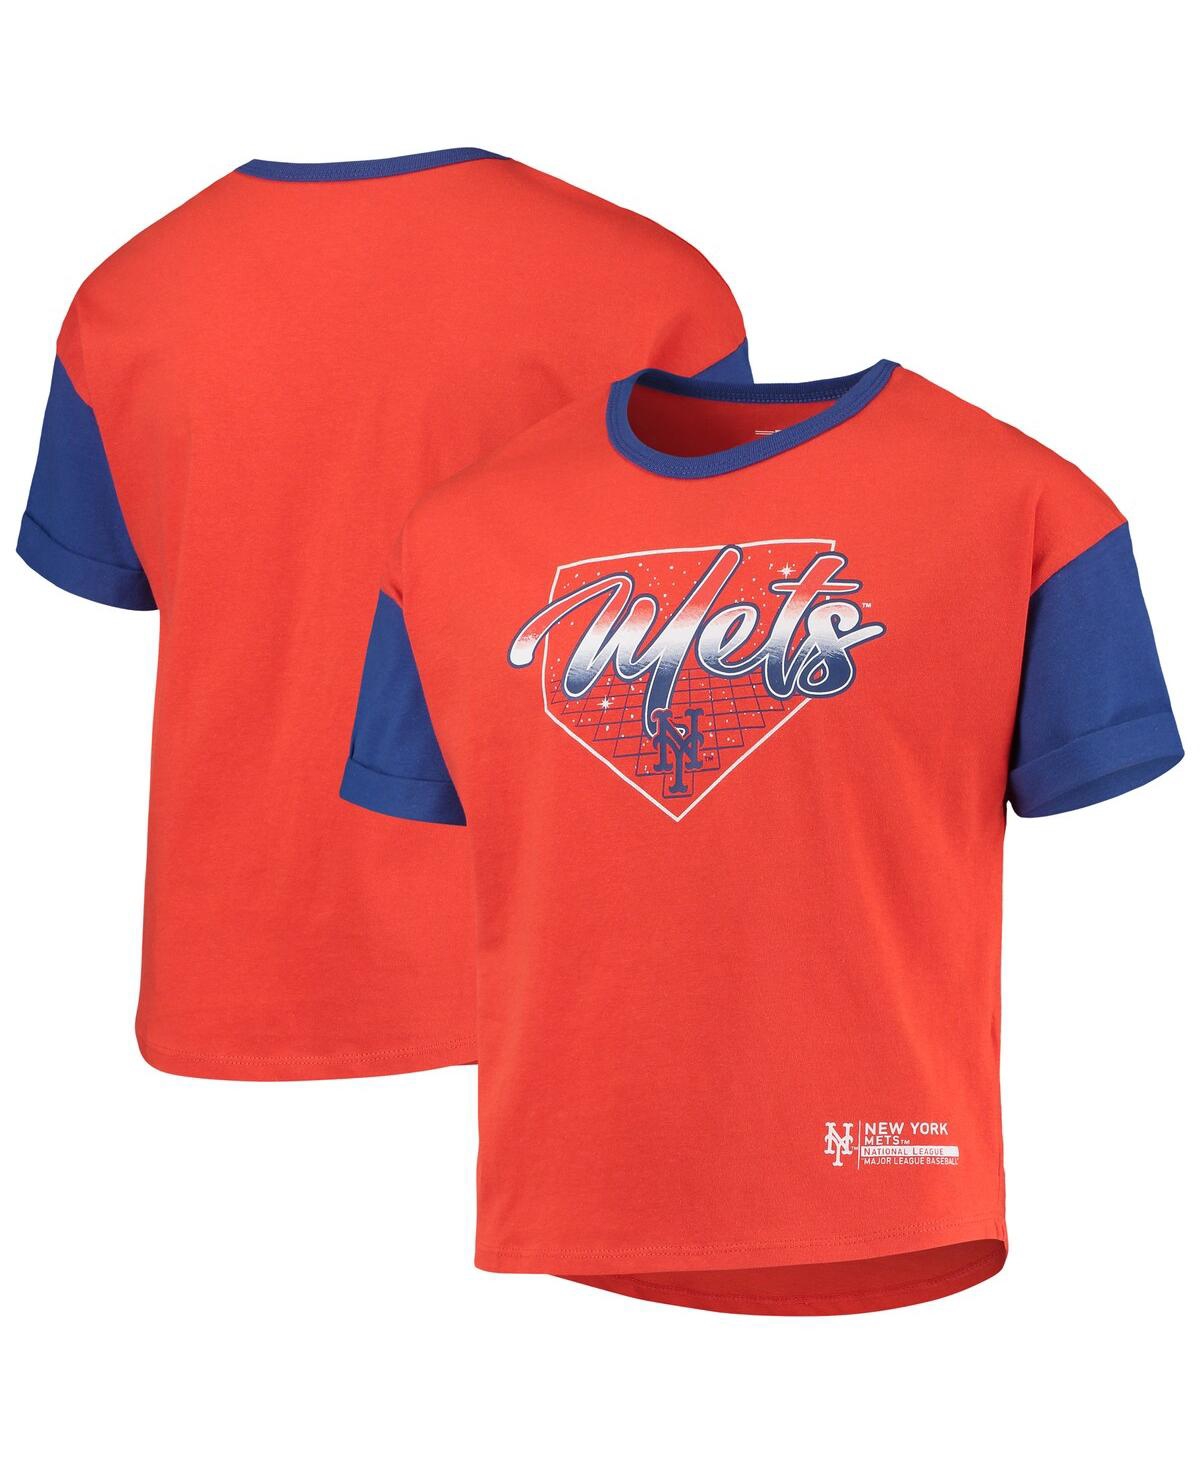 Outerstuff Kids' Big Girls Orange New York Mets Bleachers T-shirt